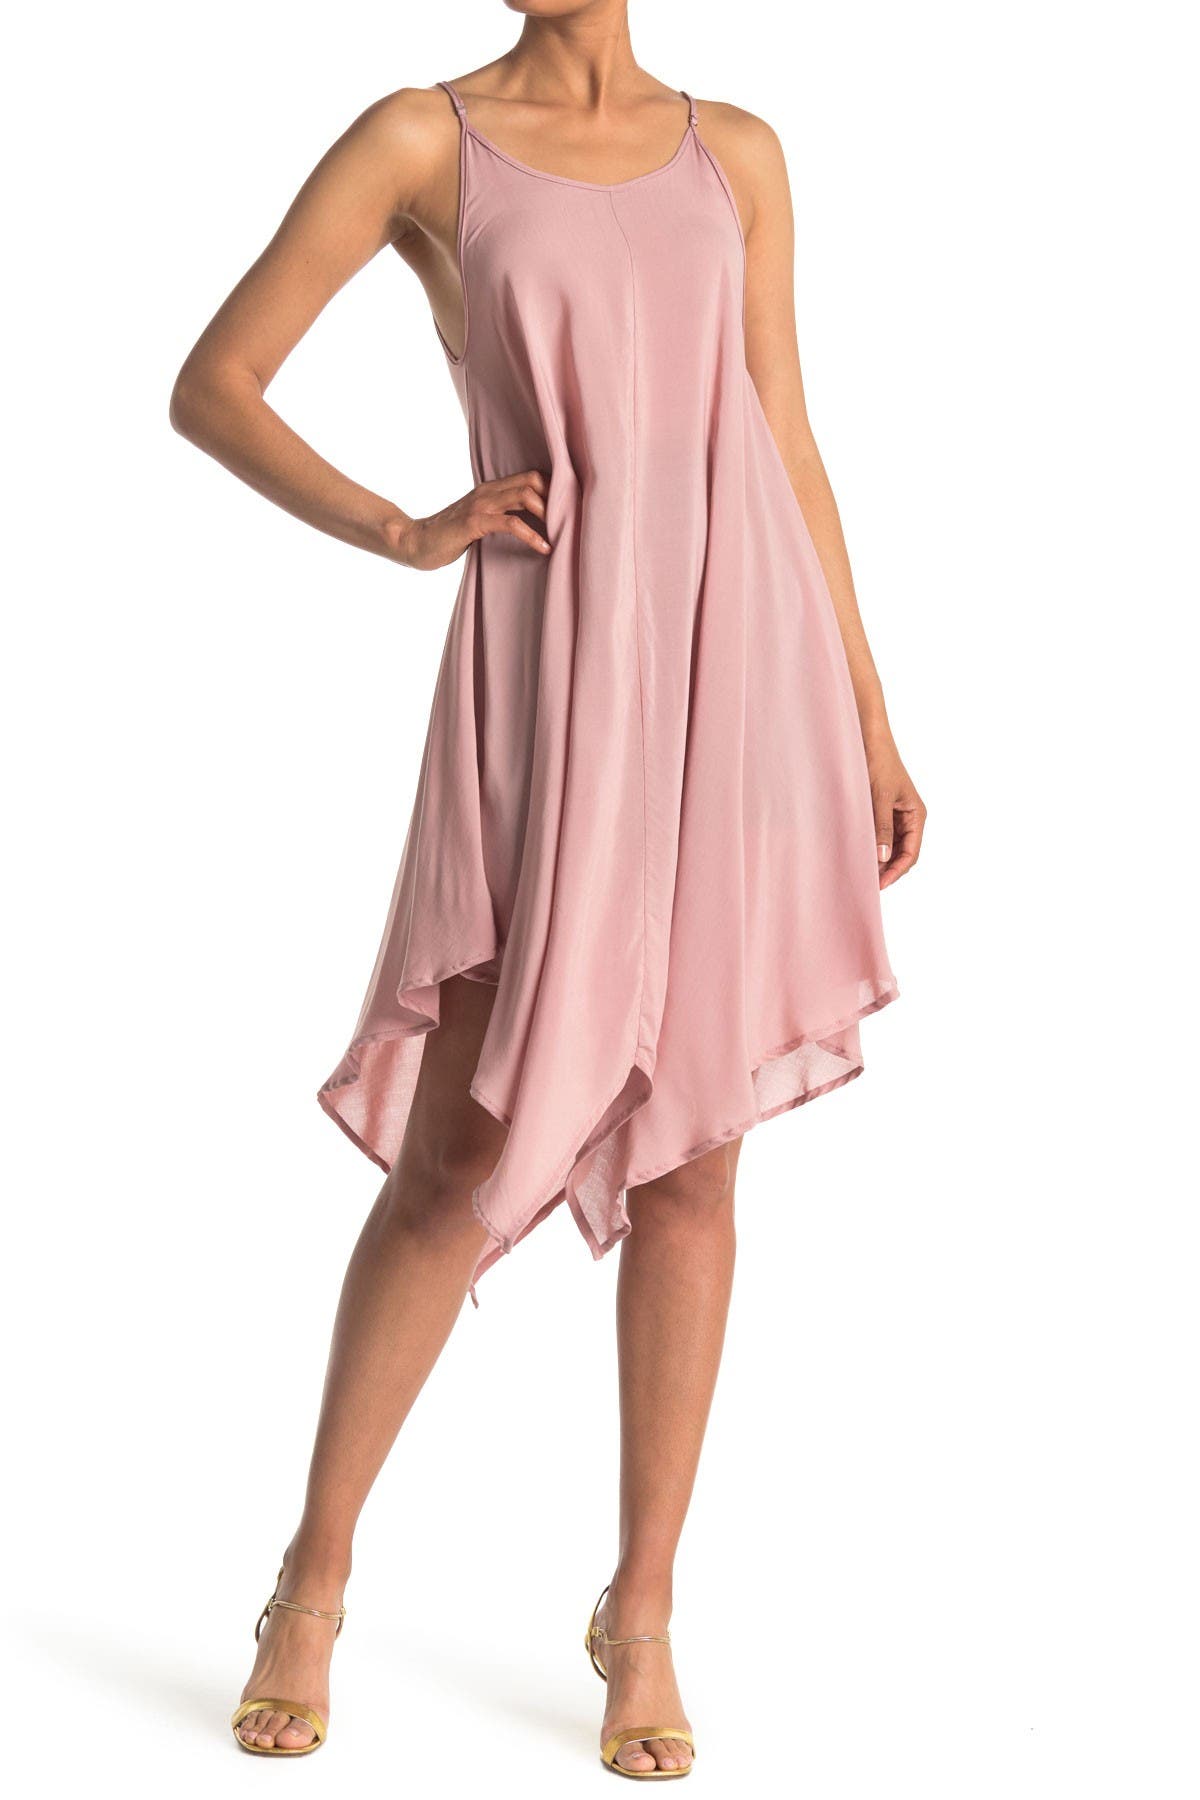 Elan Spaghetti Strap Midi Slip Dress Cover-up In Rose